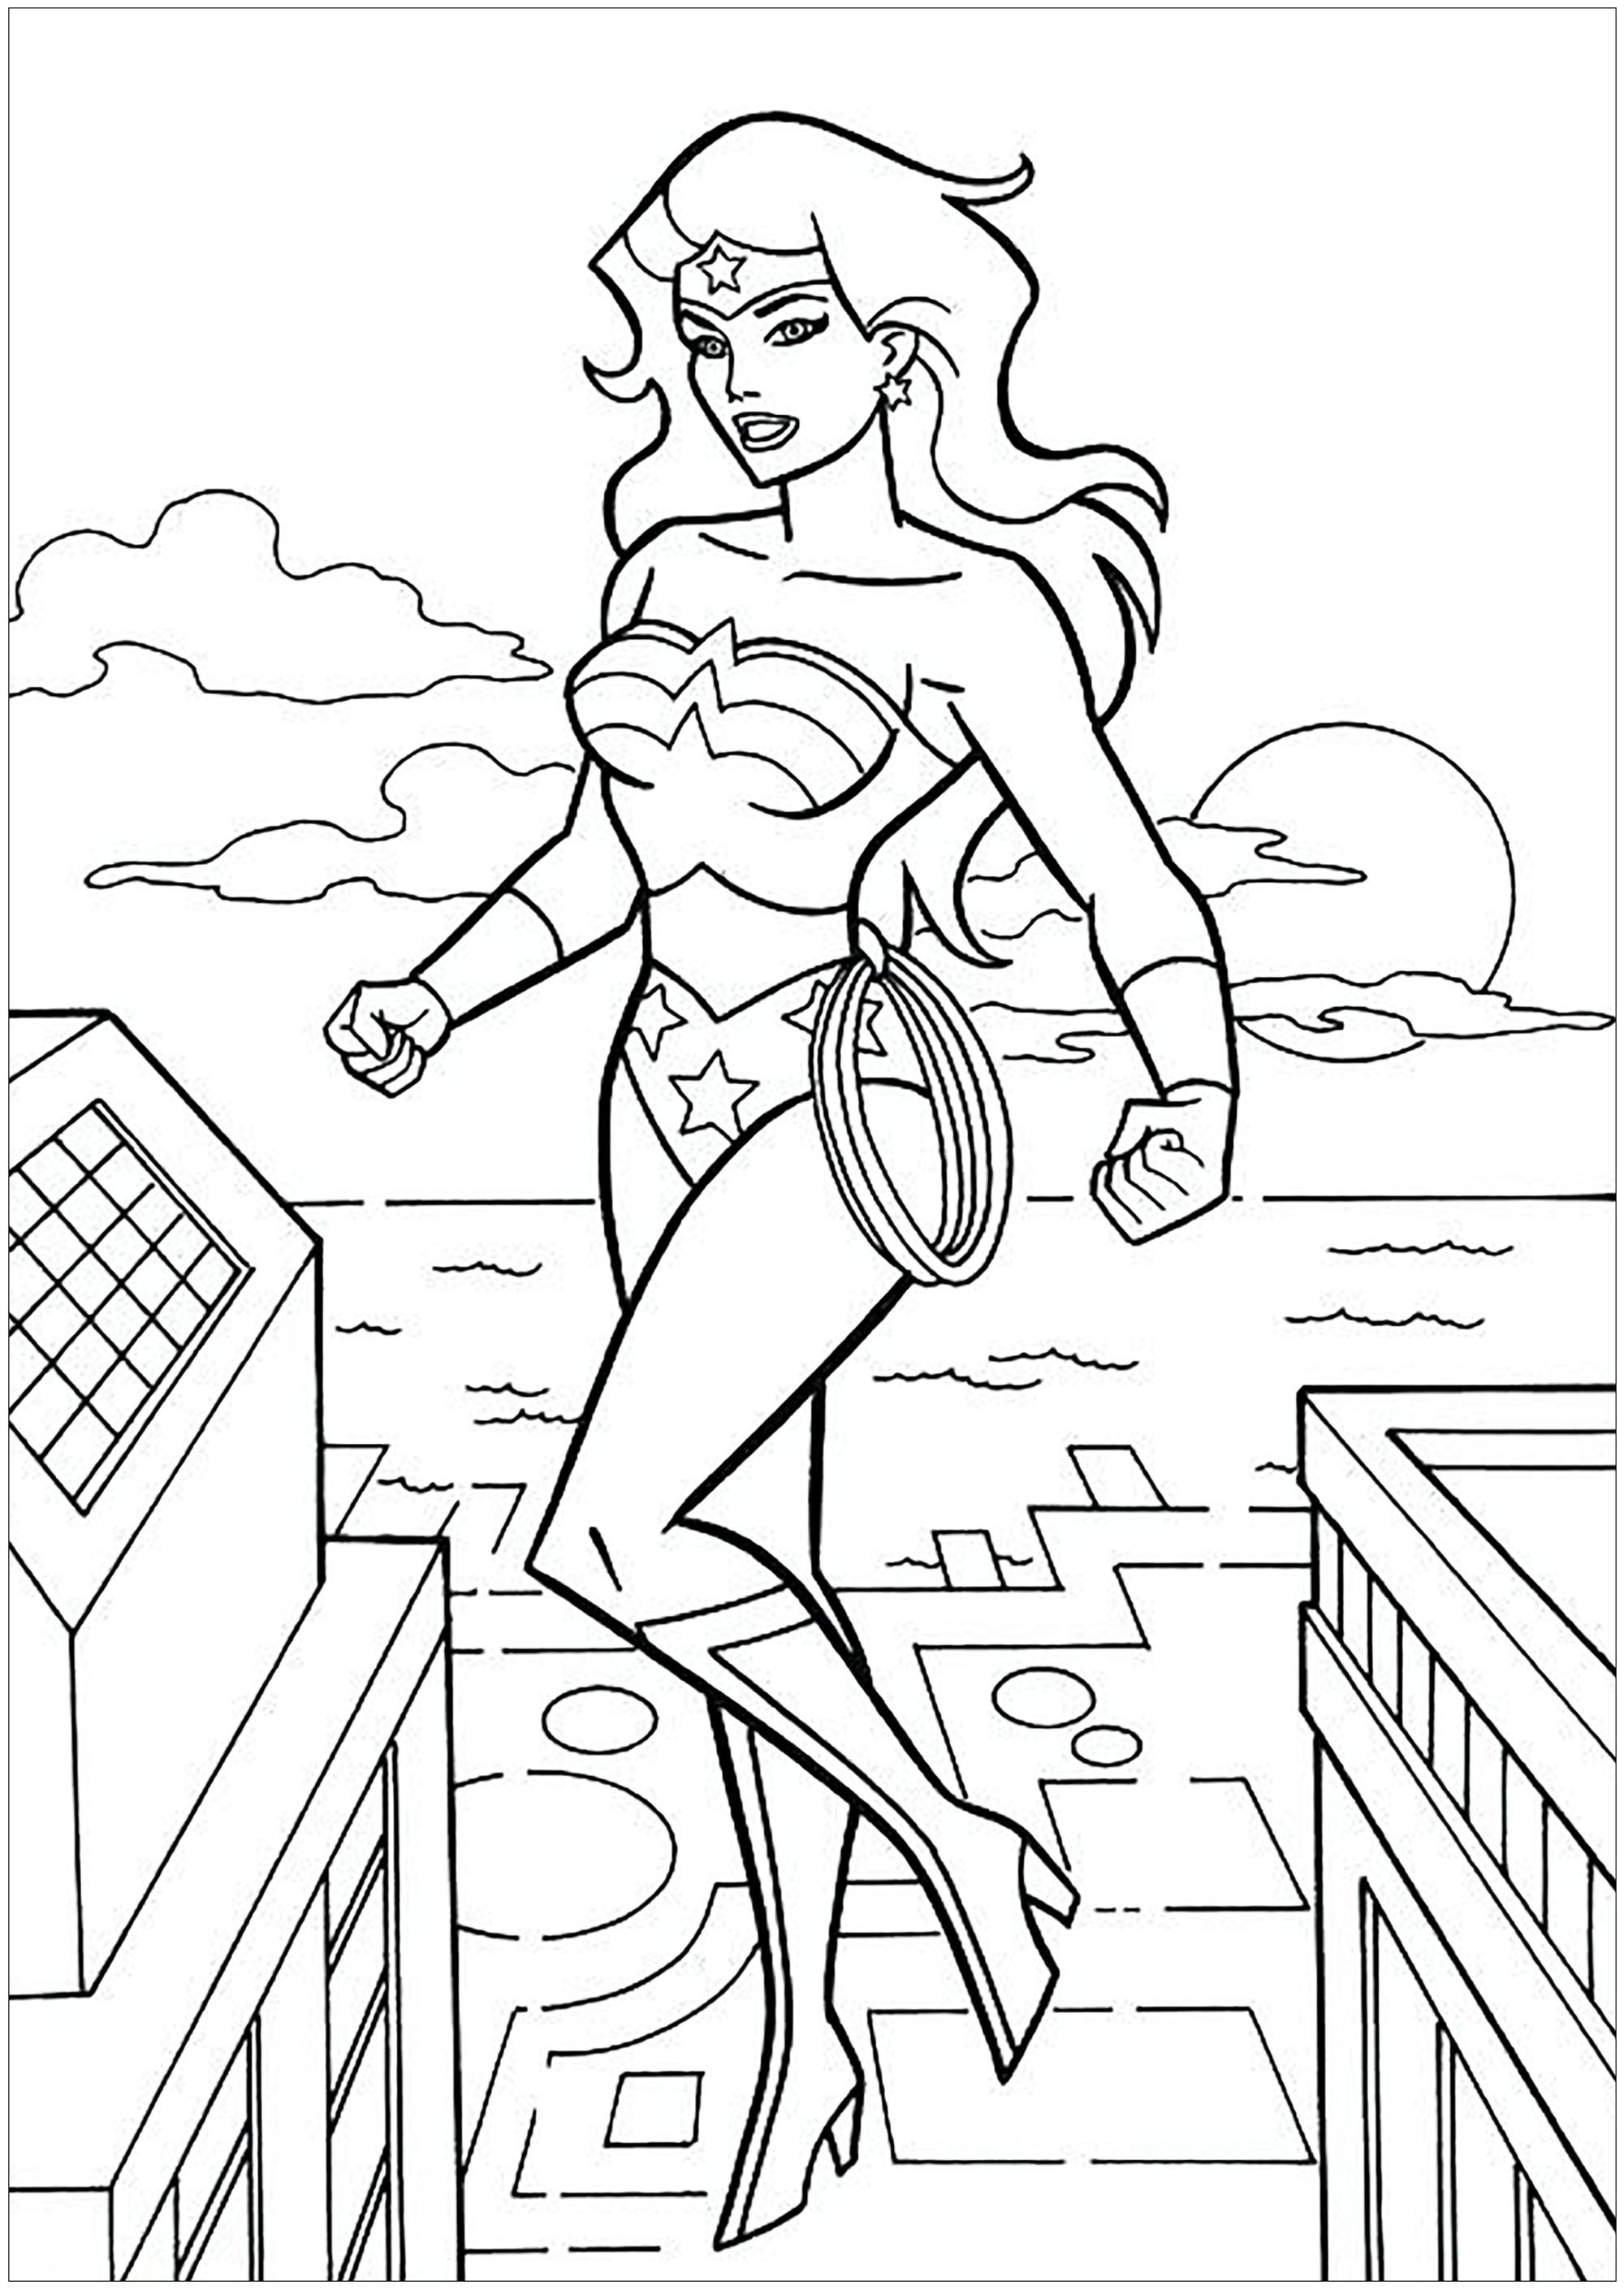 Wonder woman prend son envol - Coloriage Wonder Woman - Coloriages pour